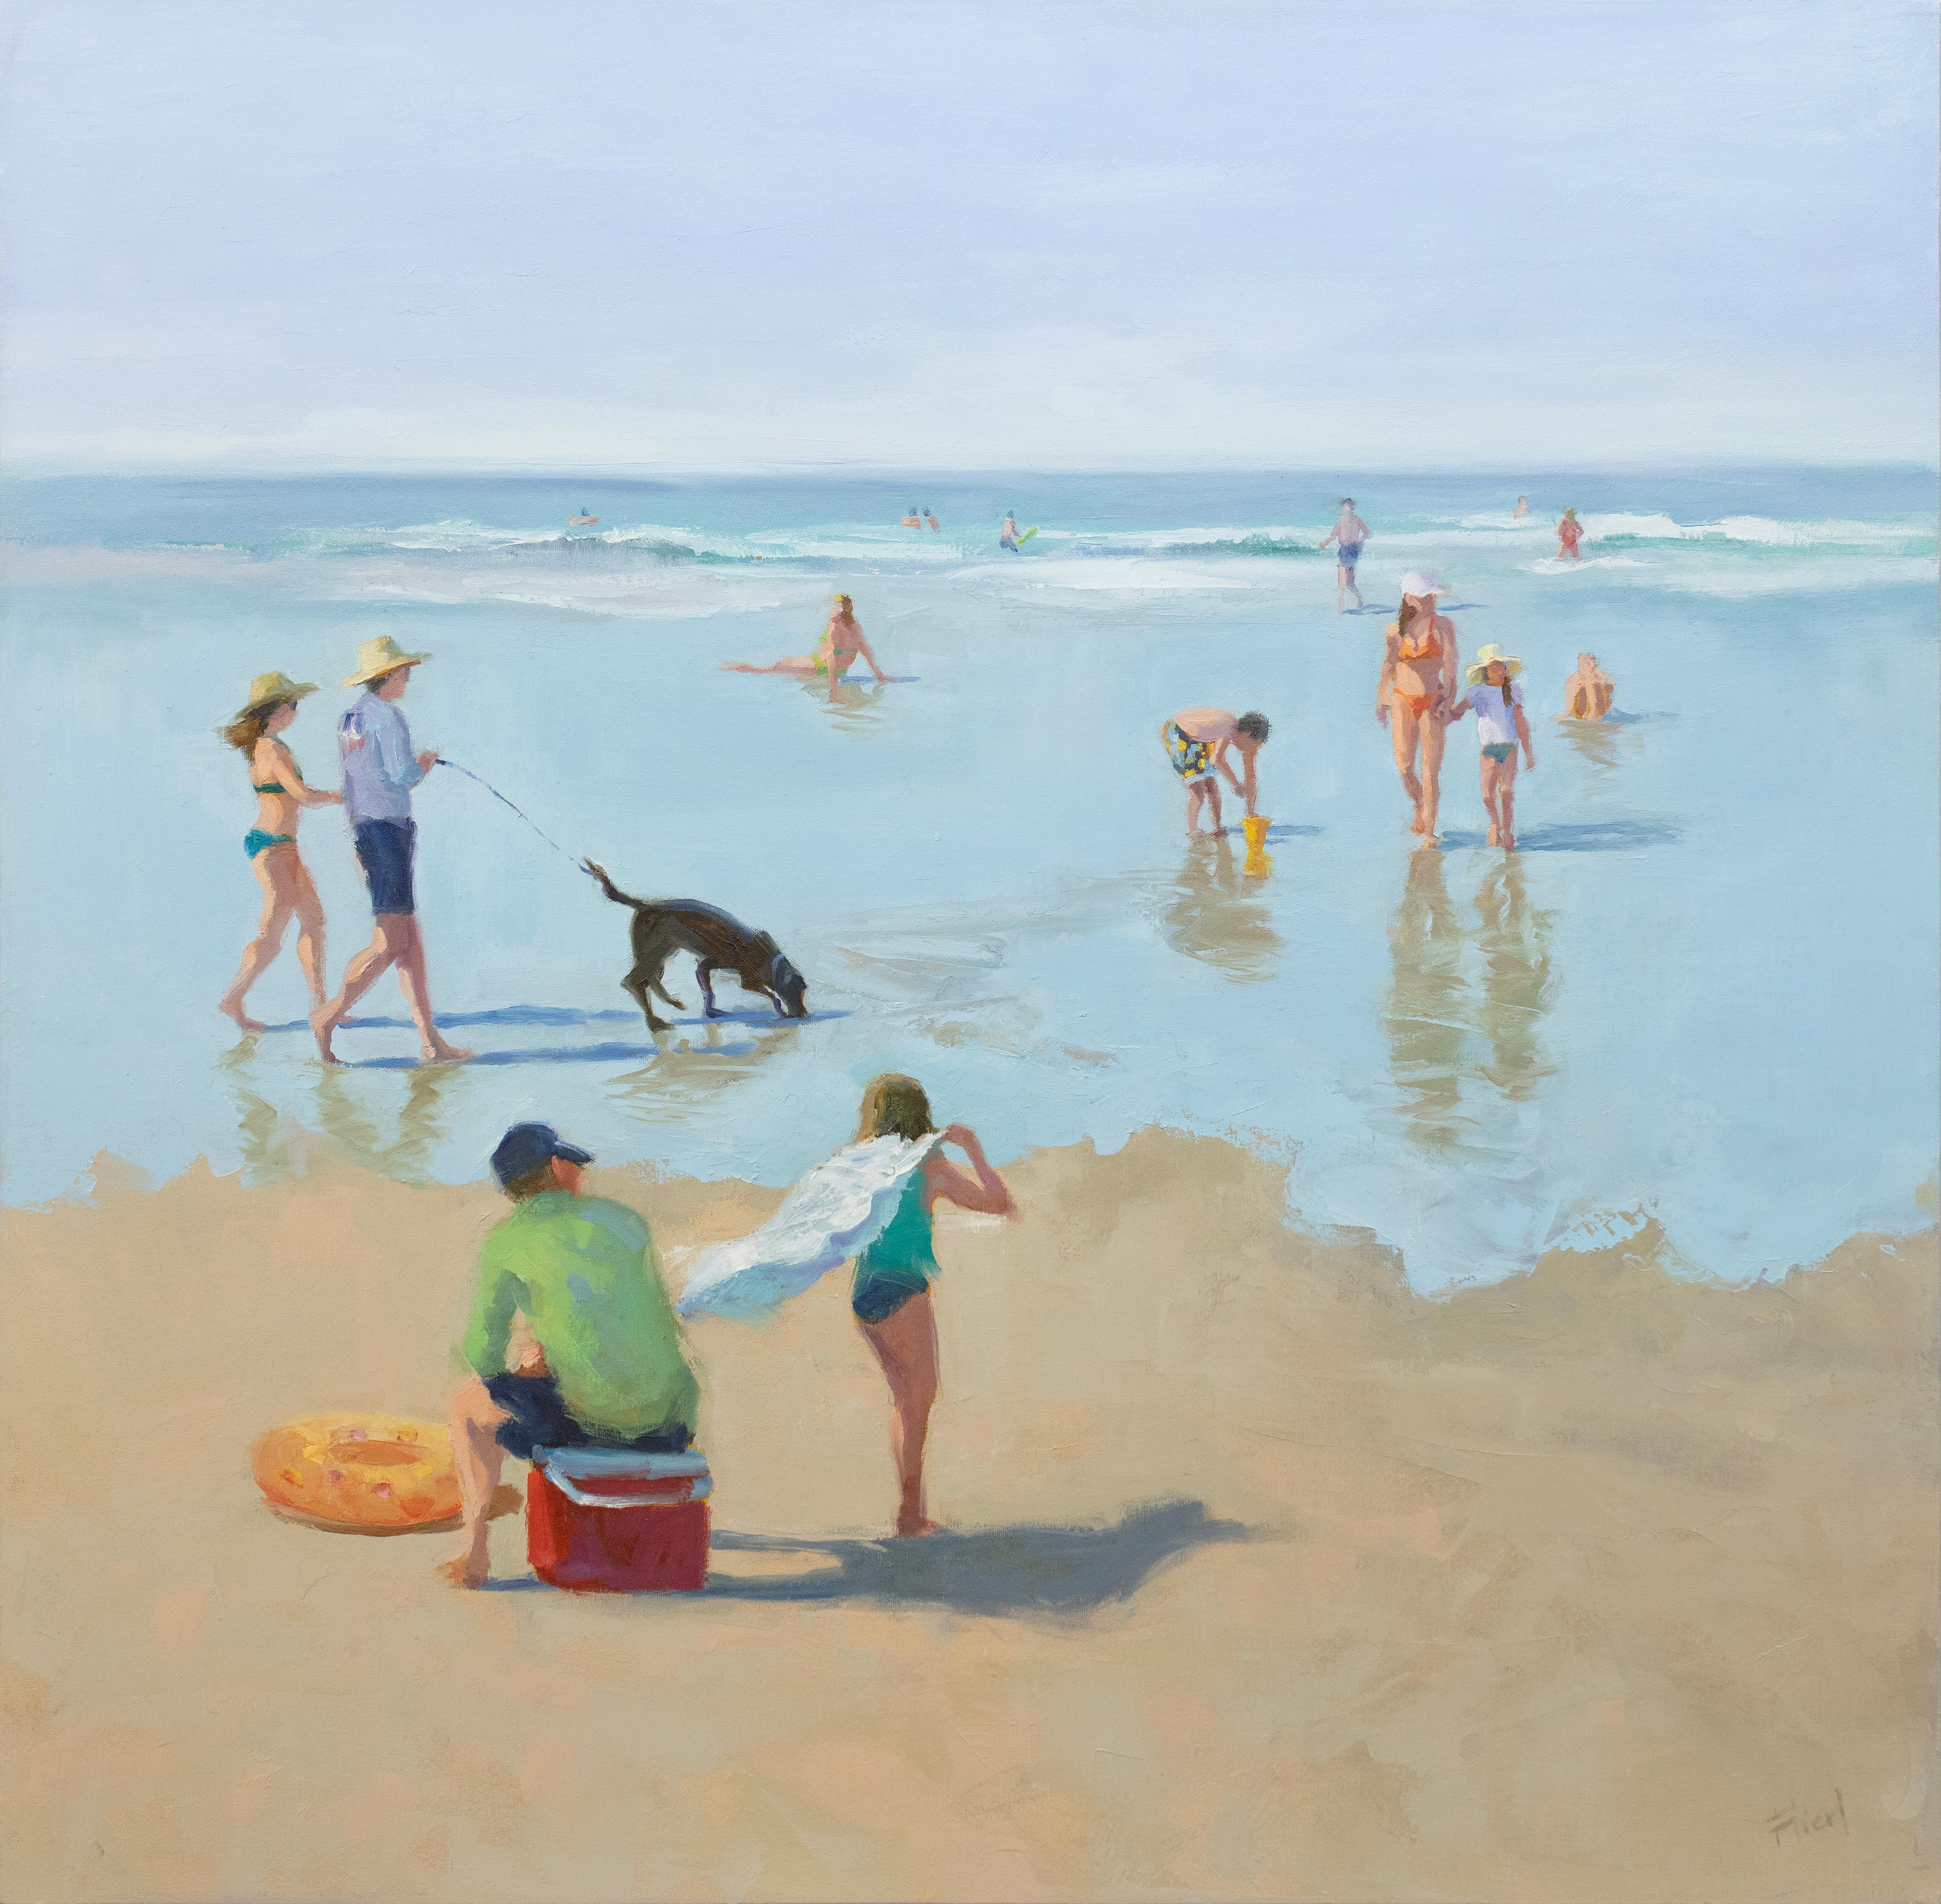 Dieses Gemälde einer Küstenlandschaft zeigt Strandbesucher beim Faulenzen und Schwimmen an der Küste. Es zeichnet sich durch eine kühle Farbpalette und einen lockeren, malerischen Stil aus. Das Gemälde ist mit Ölfarbe auf galerieumwickelter Leinwand